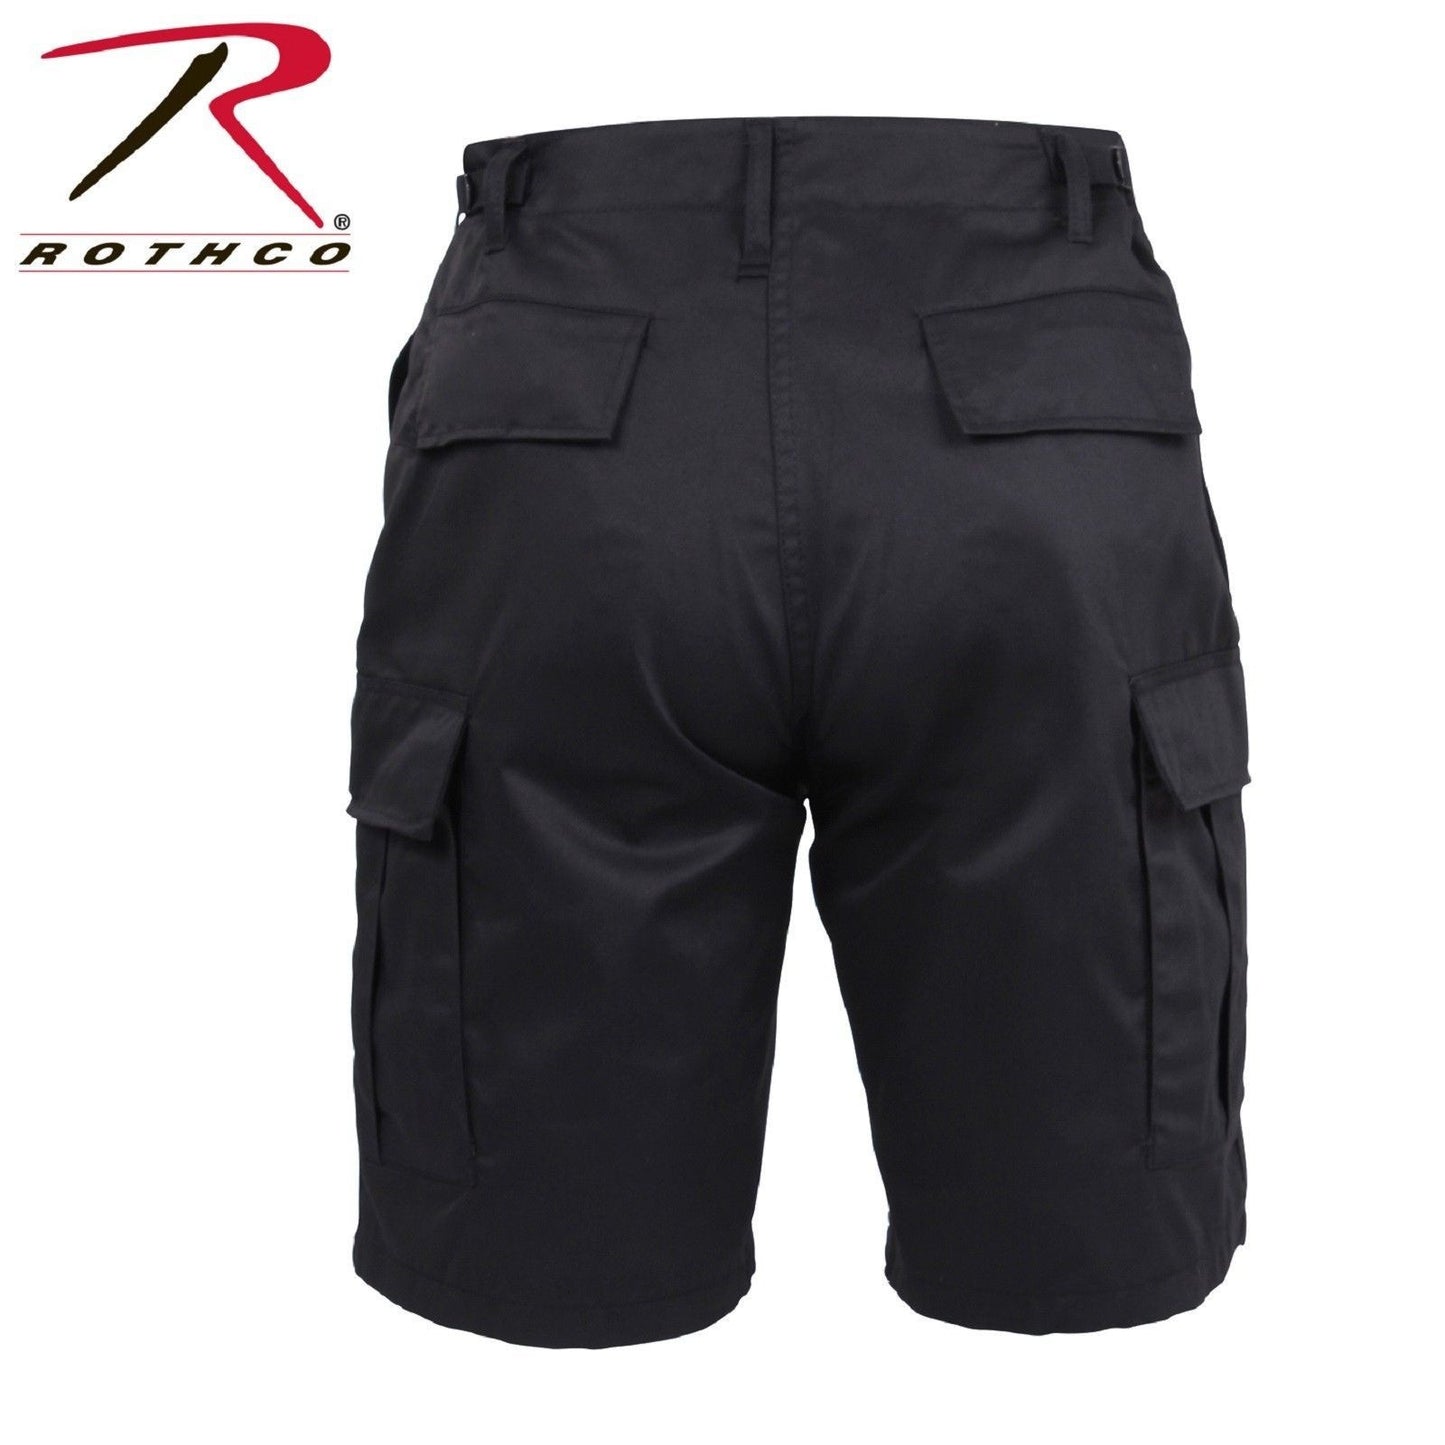 Mens Black BDU Cargo Shorts - Rothco Zip Fly Tactical Combat Shorts 5903